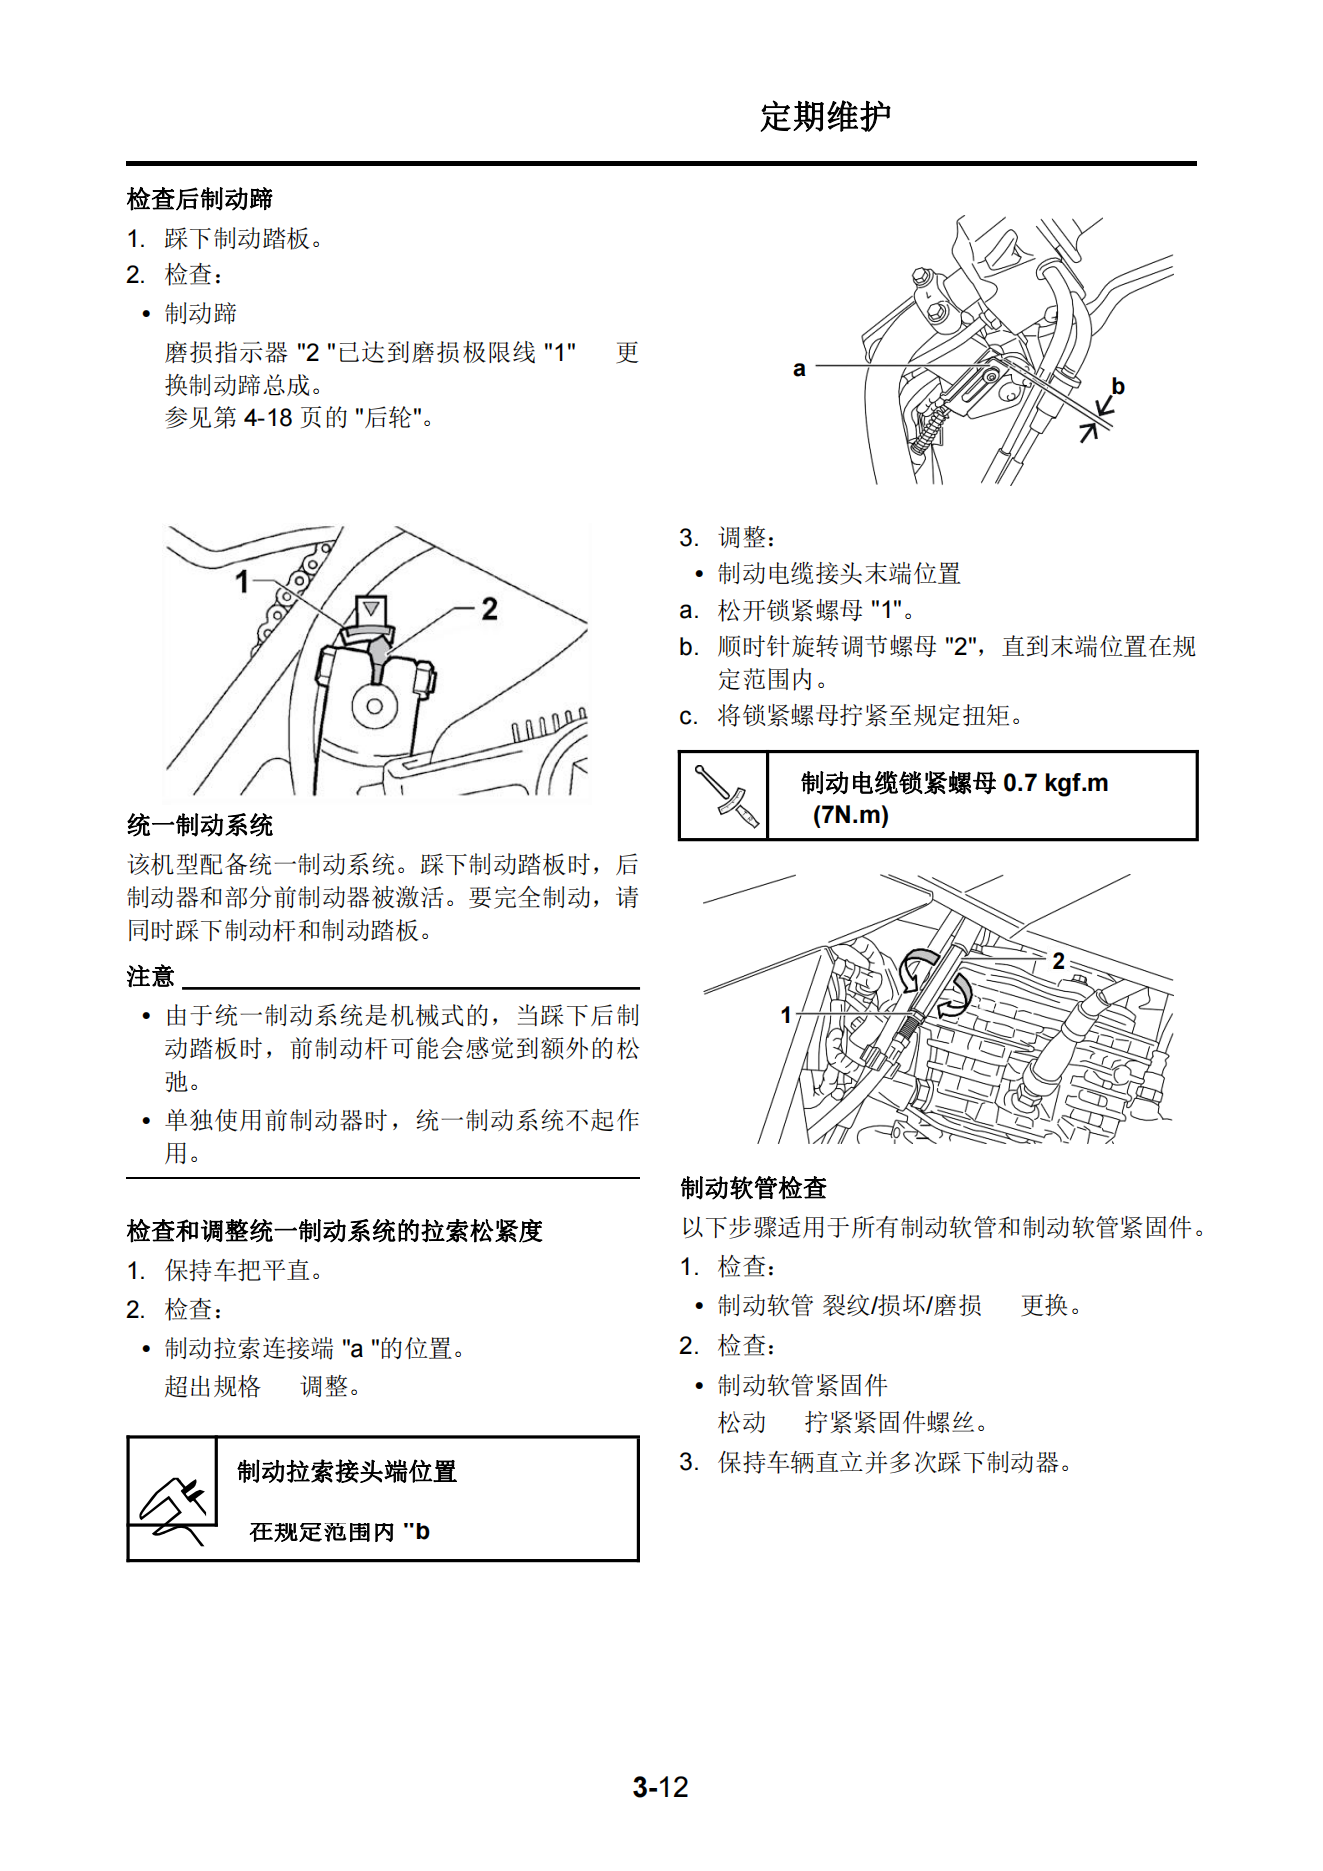 简体中文2020年雅马哈ybr150维修手册factor 150维修手册插图2